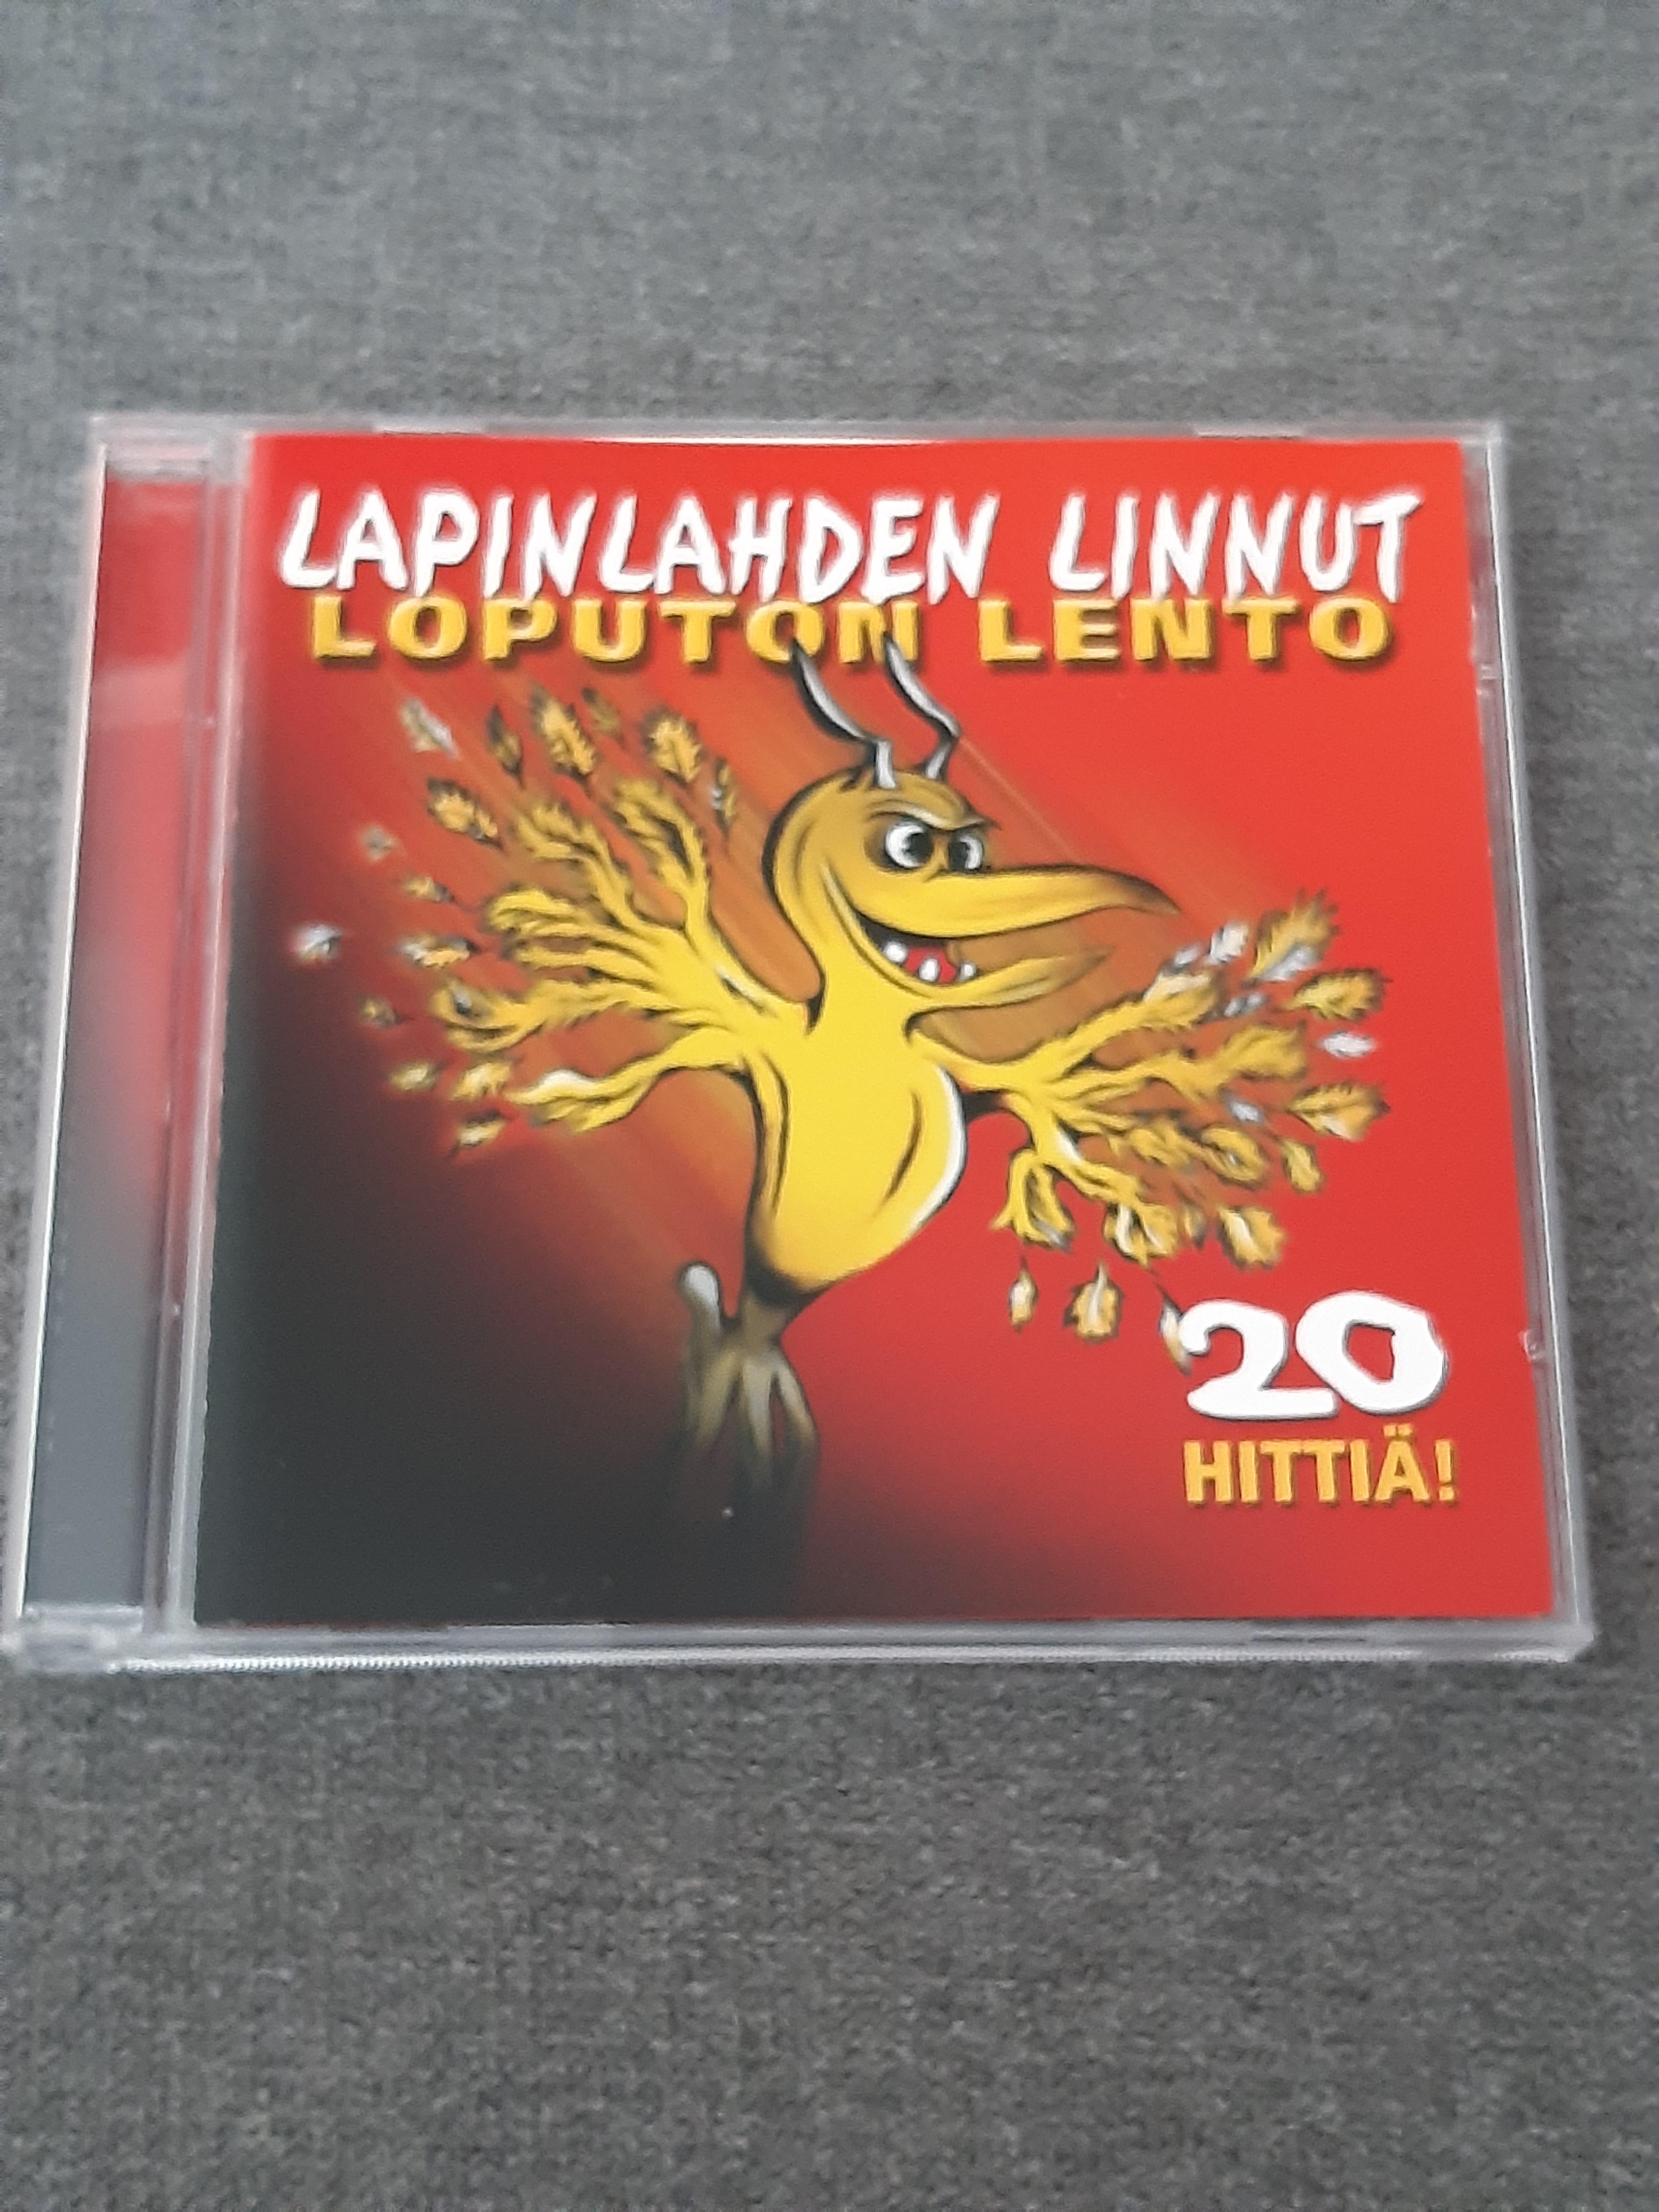 Lapinlahden Linnut - Loputon lento - CD (käytetty)